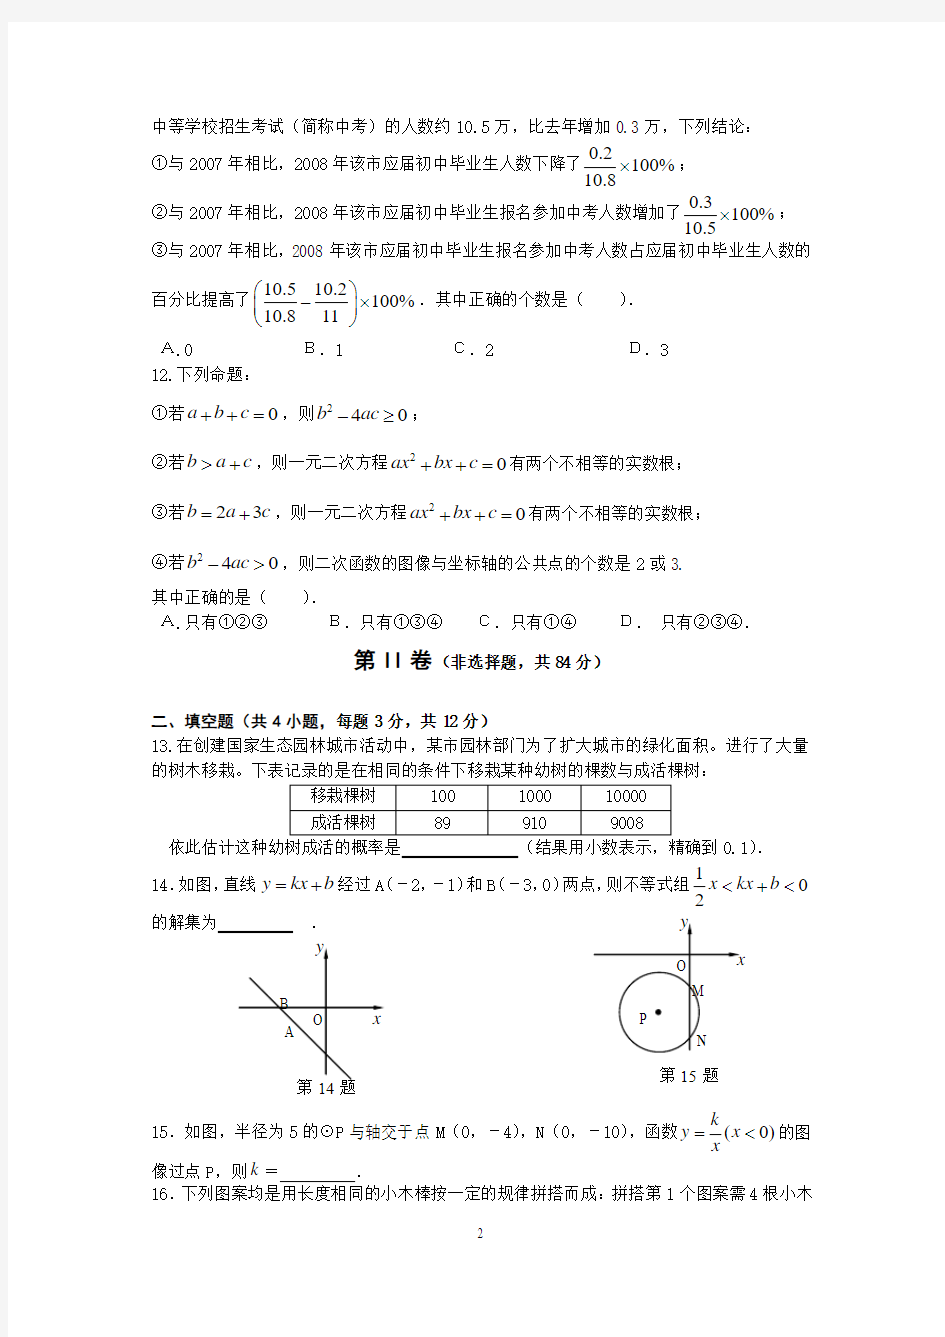 2008湖北武汉中考数学试卷-确定版